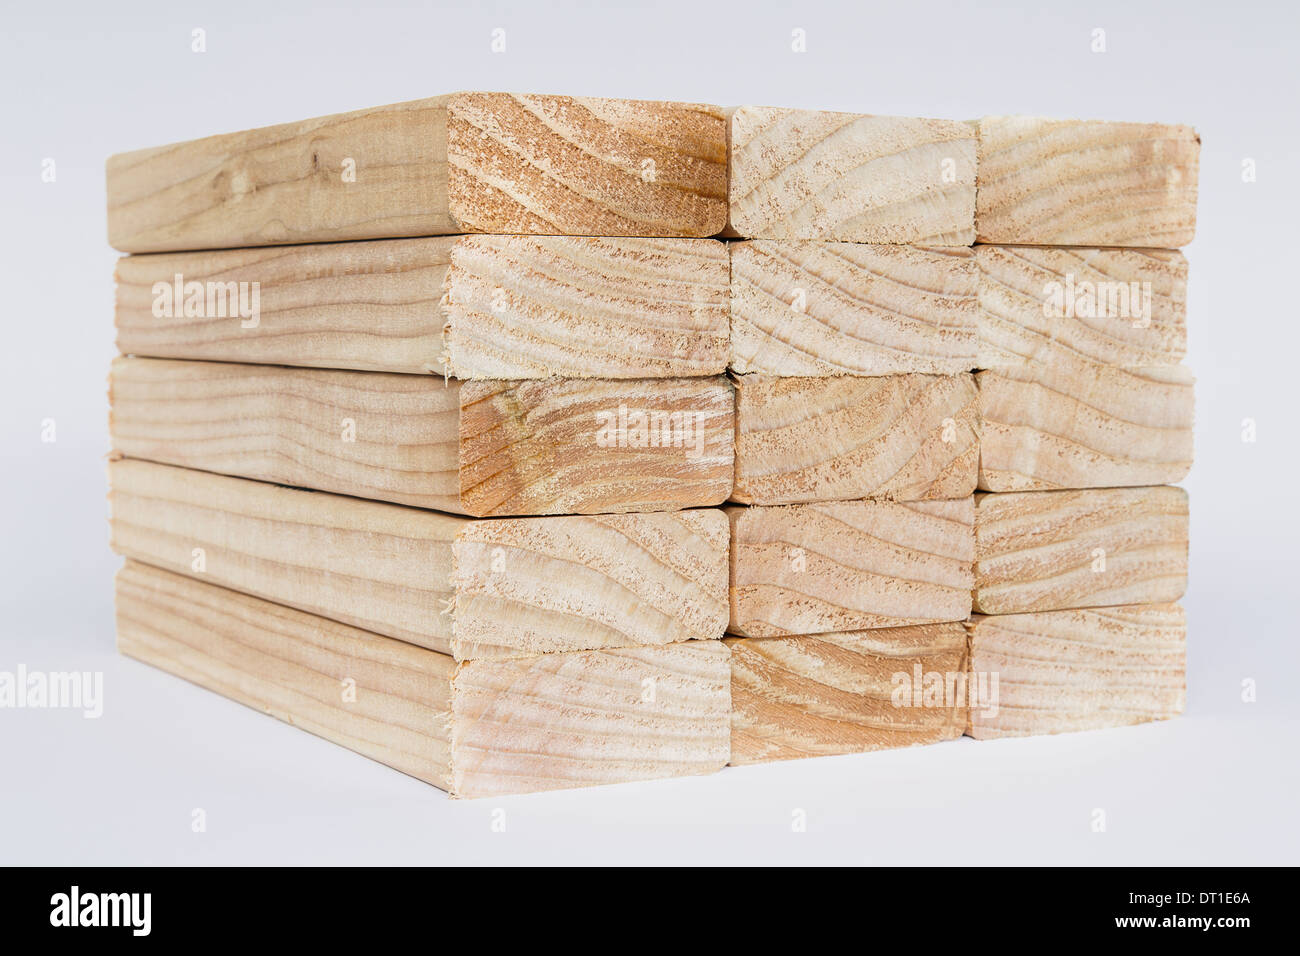 El estado de Washington, EE.UU. preparó madera aserrada spruce los tablones de madera o espárragos Foto de stock